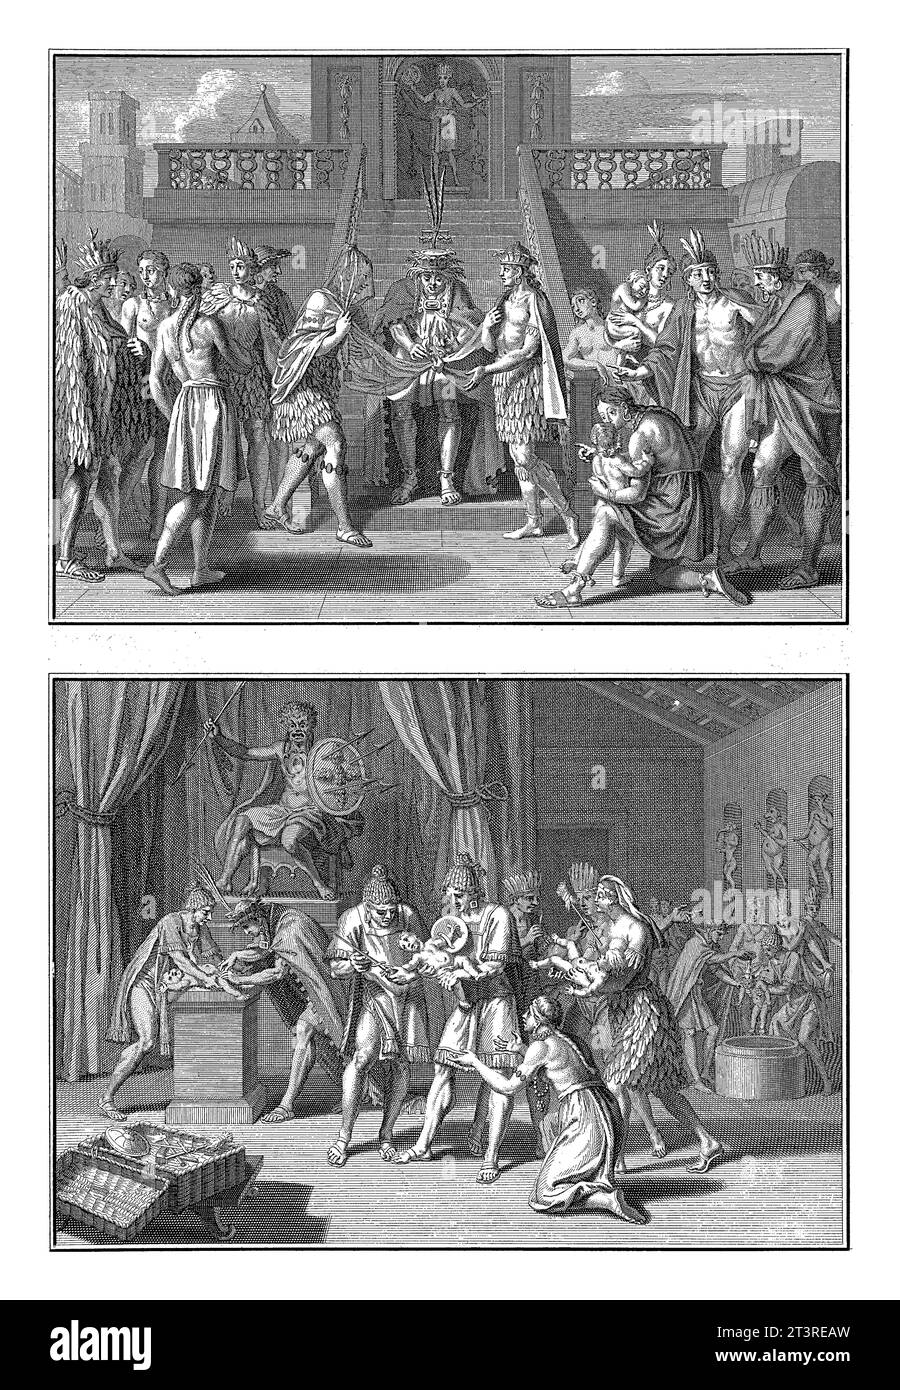 Mexikanische Hochzeitszeremonie und Taufzeremonie, Bernard Picart (Werkstatt), nach Bernard Picart, 1723 Blatt mit zwei Darstellungen mexikanischer ritu Stockfoto